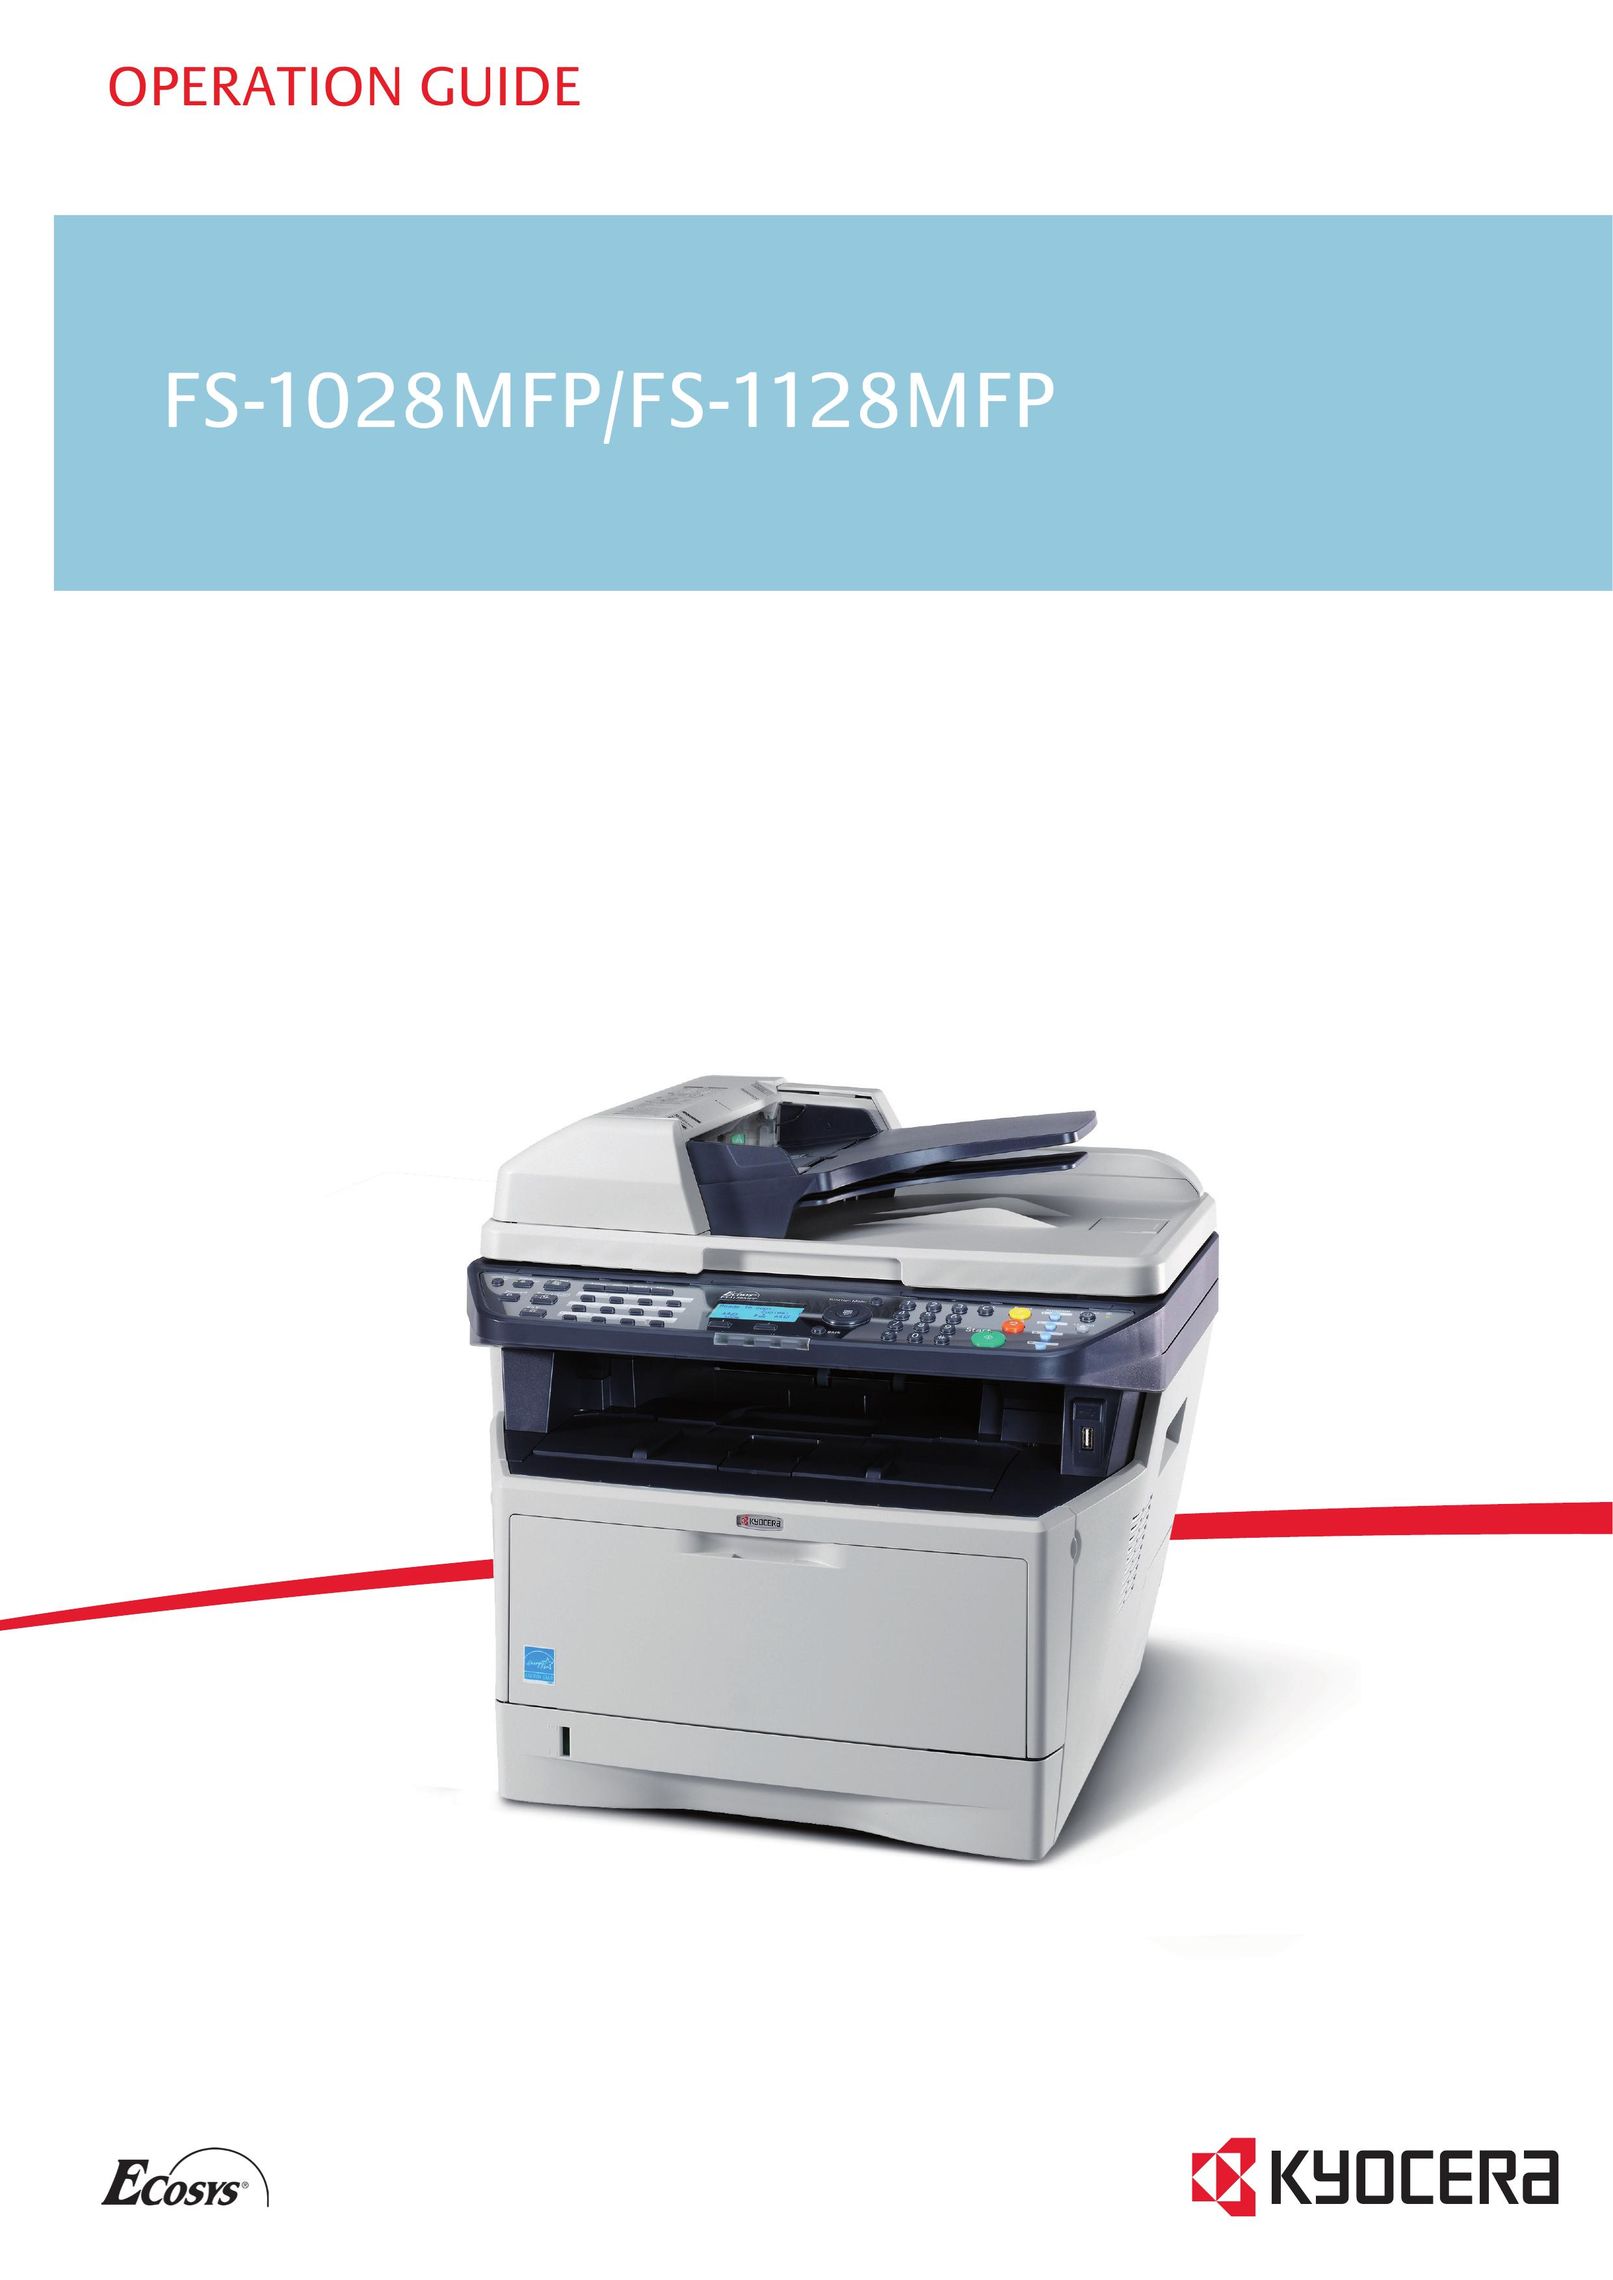 Kyocera FS-1028MFP Copier User Manual